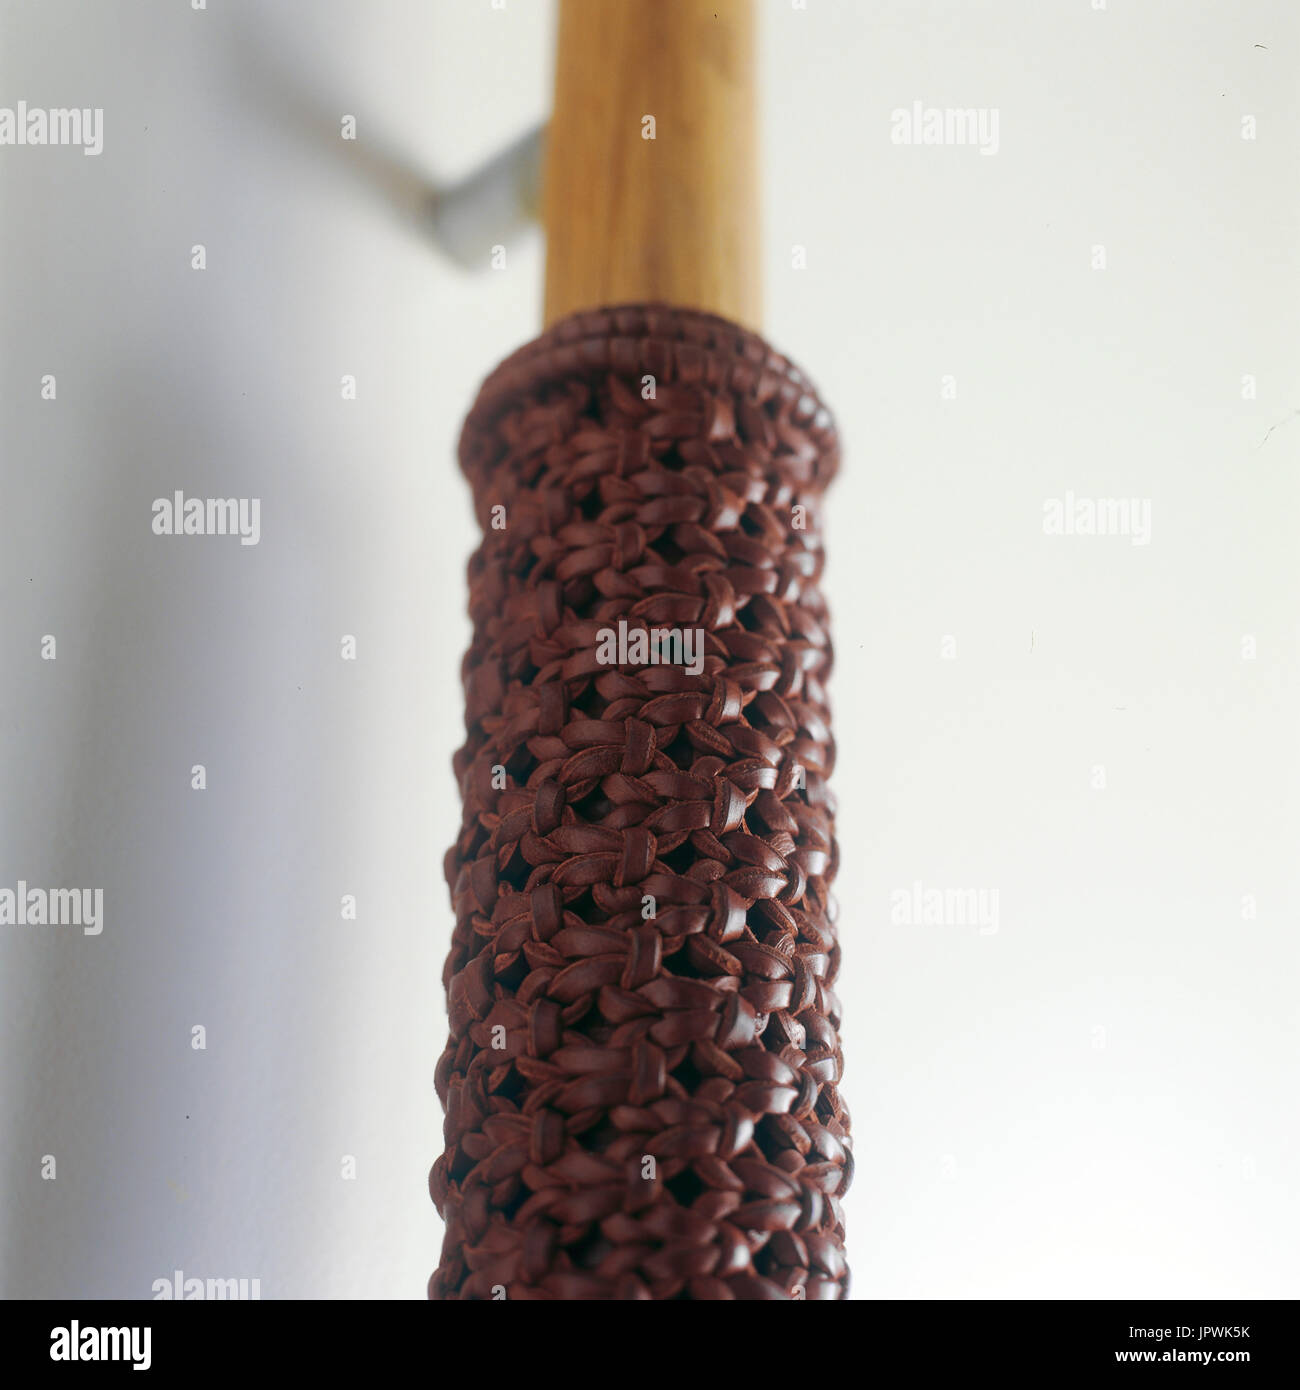 Detalle de cuero tejidas en una empuñadura de puerta Foto de stock